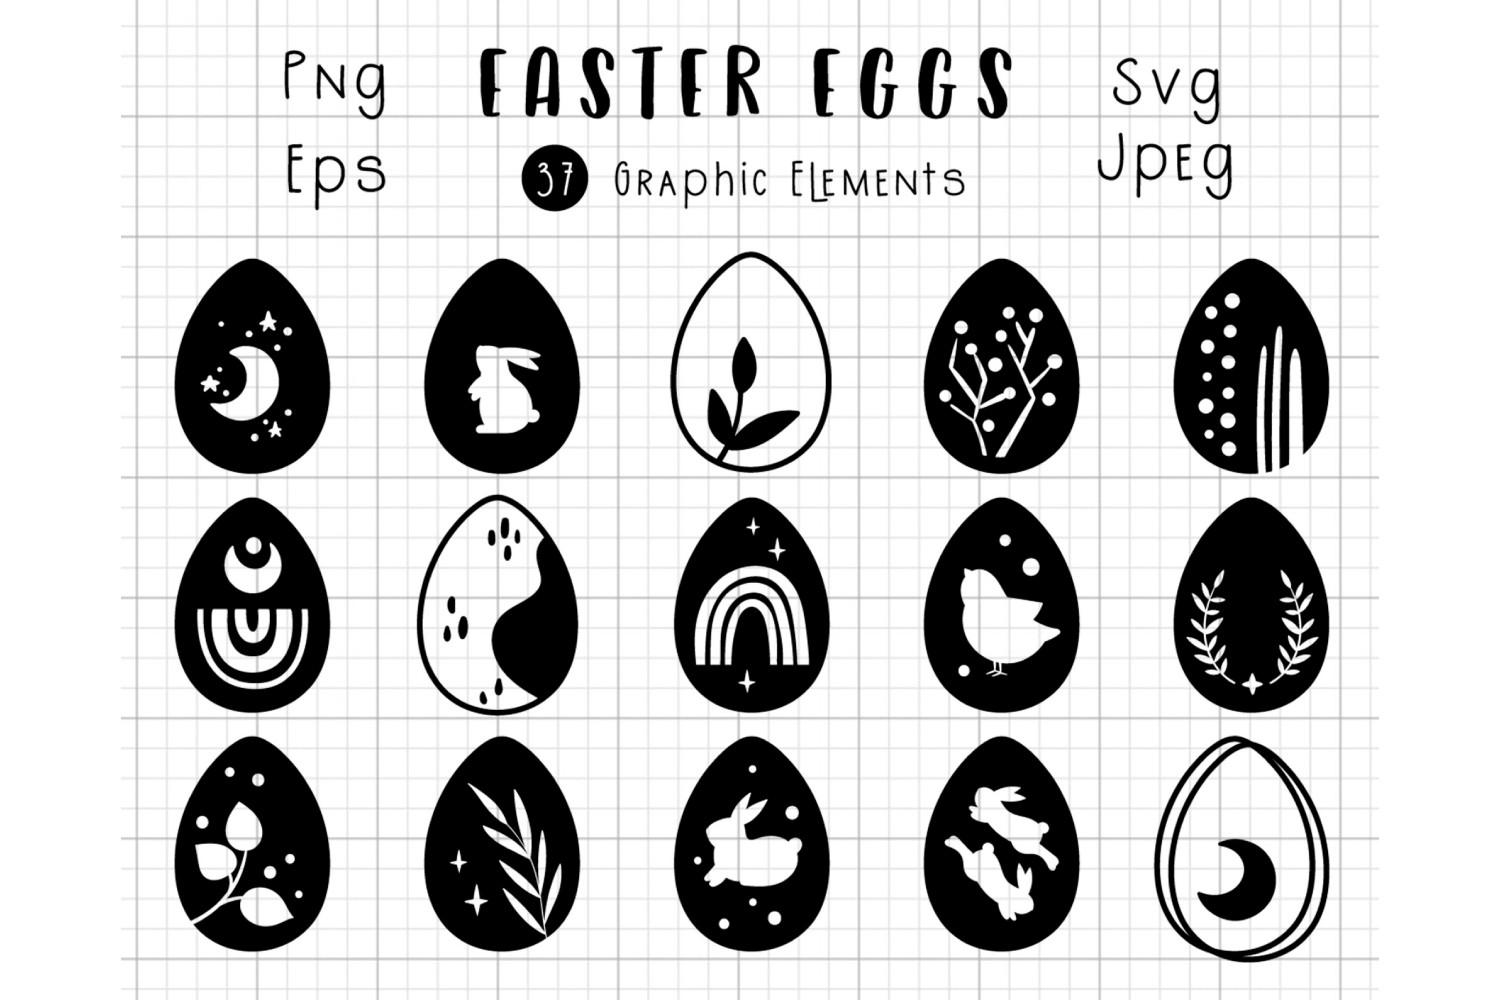 Celestial Easter Eggs SVG PNG Bundle